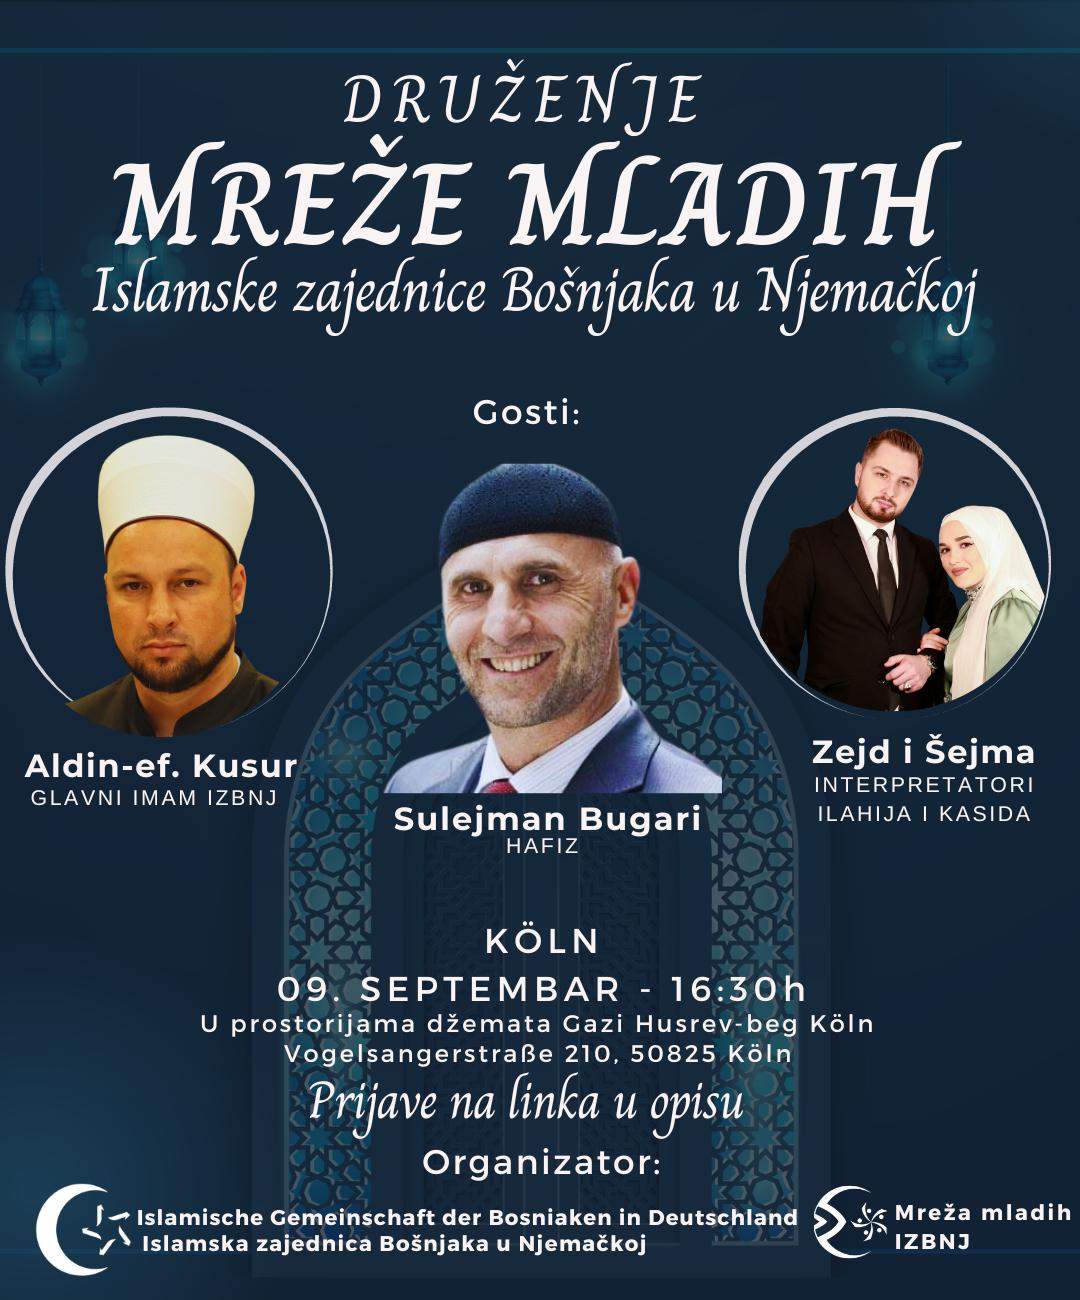 IMG-20230830-WA0005.jpg - Druženje Mreže mladih Islamske zajednice Bošnjaka u Njemačkoj